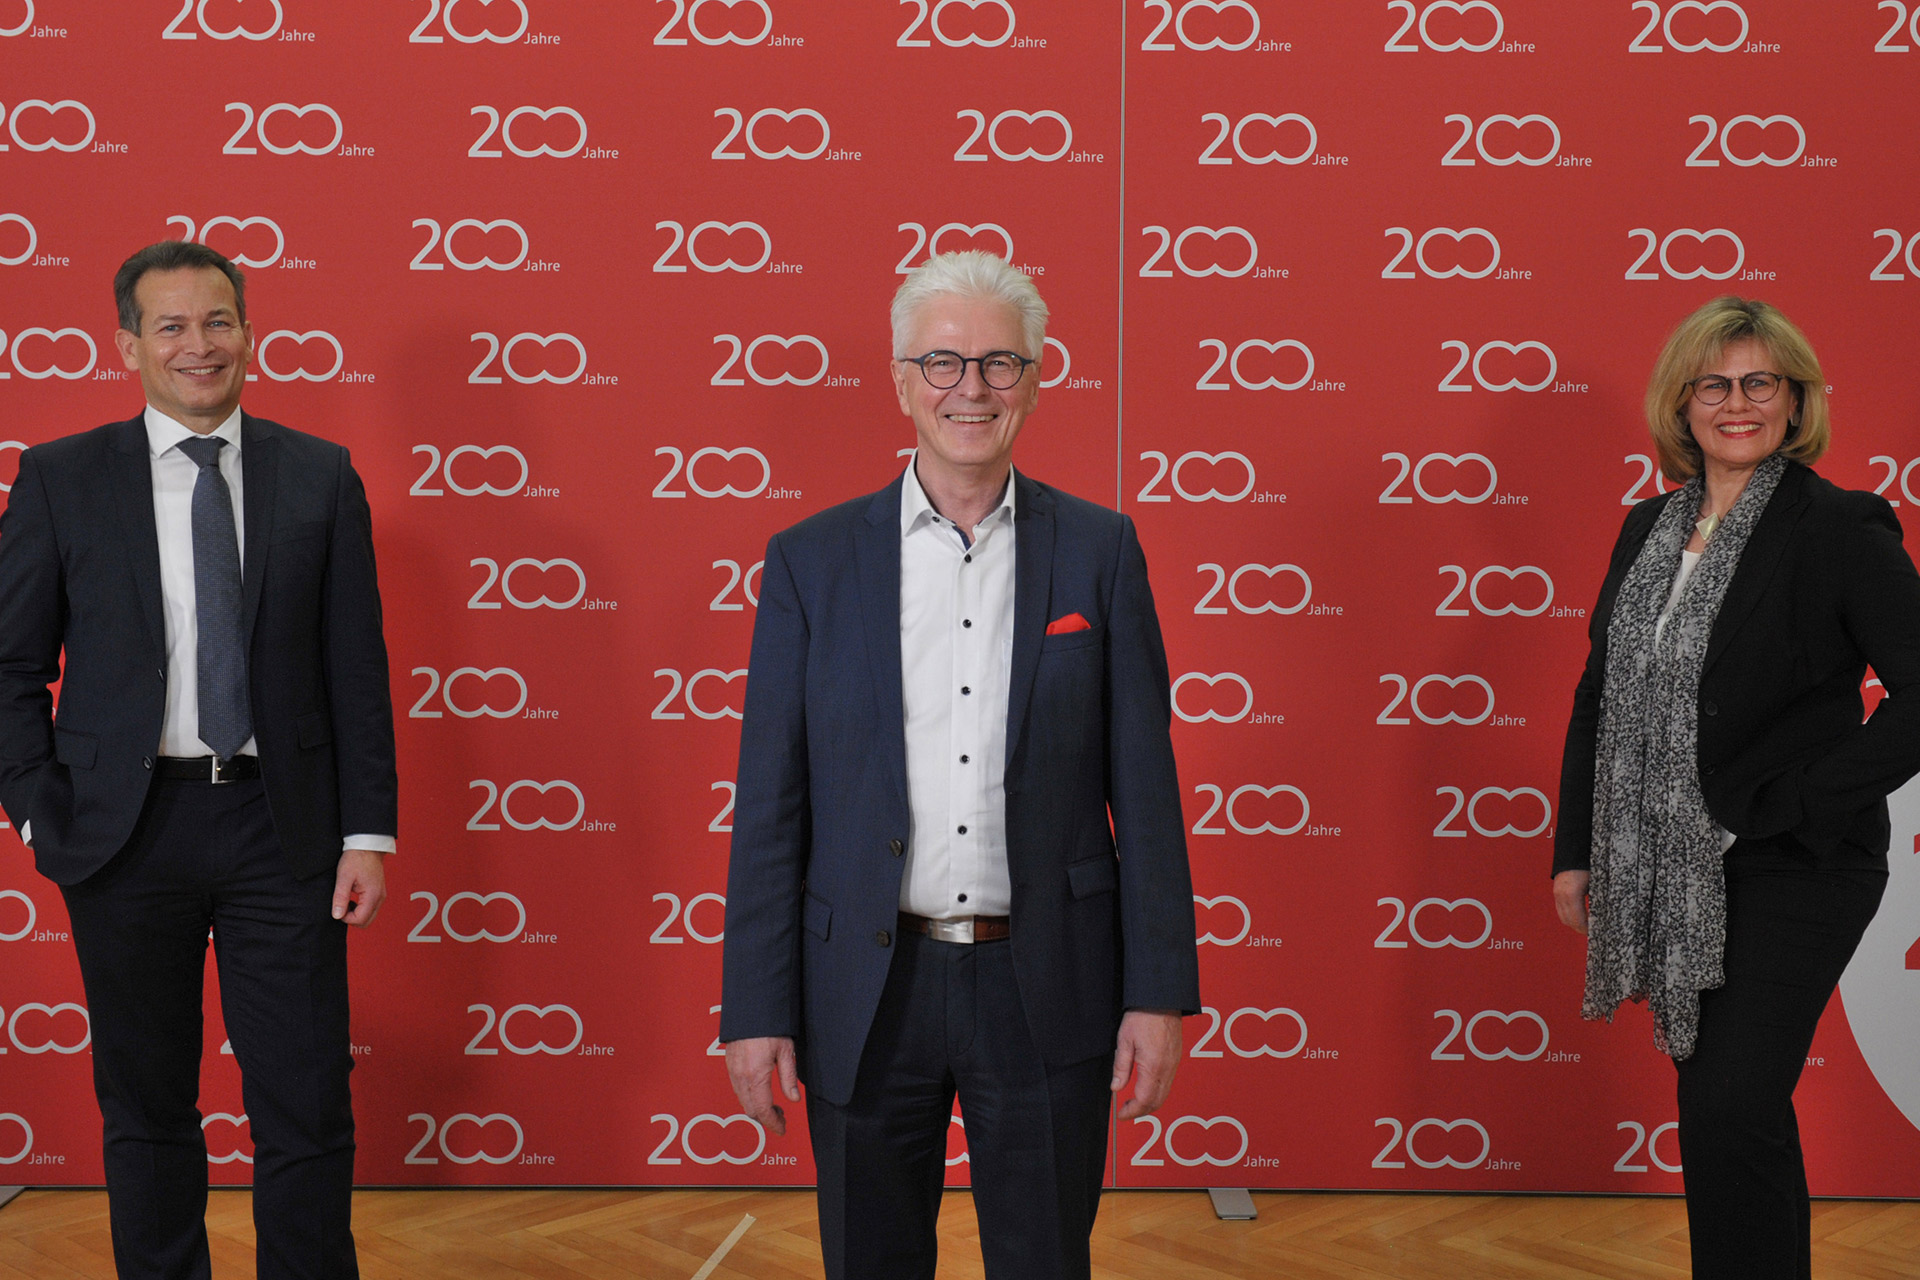 200 Jahre Kundennähe und gesellschaftliche Verantwortung: Mit zahlreichen, über das Jahr 2022 verteilten Jubiläums-Aktivitäten, feierte die Stadtsparkasse Augsburg ihren 200. Geburtstag.